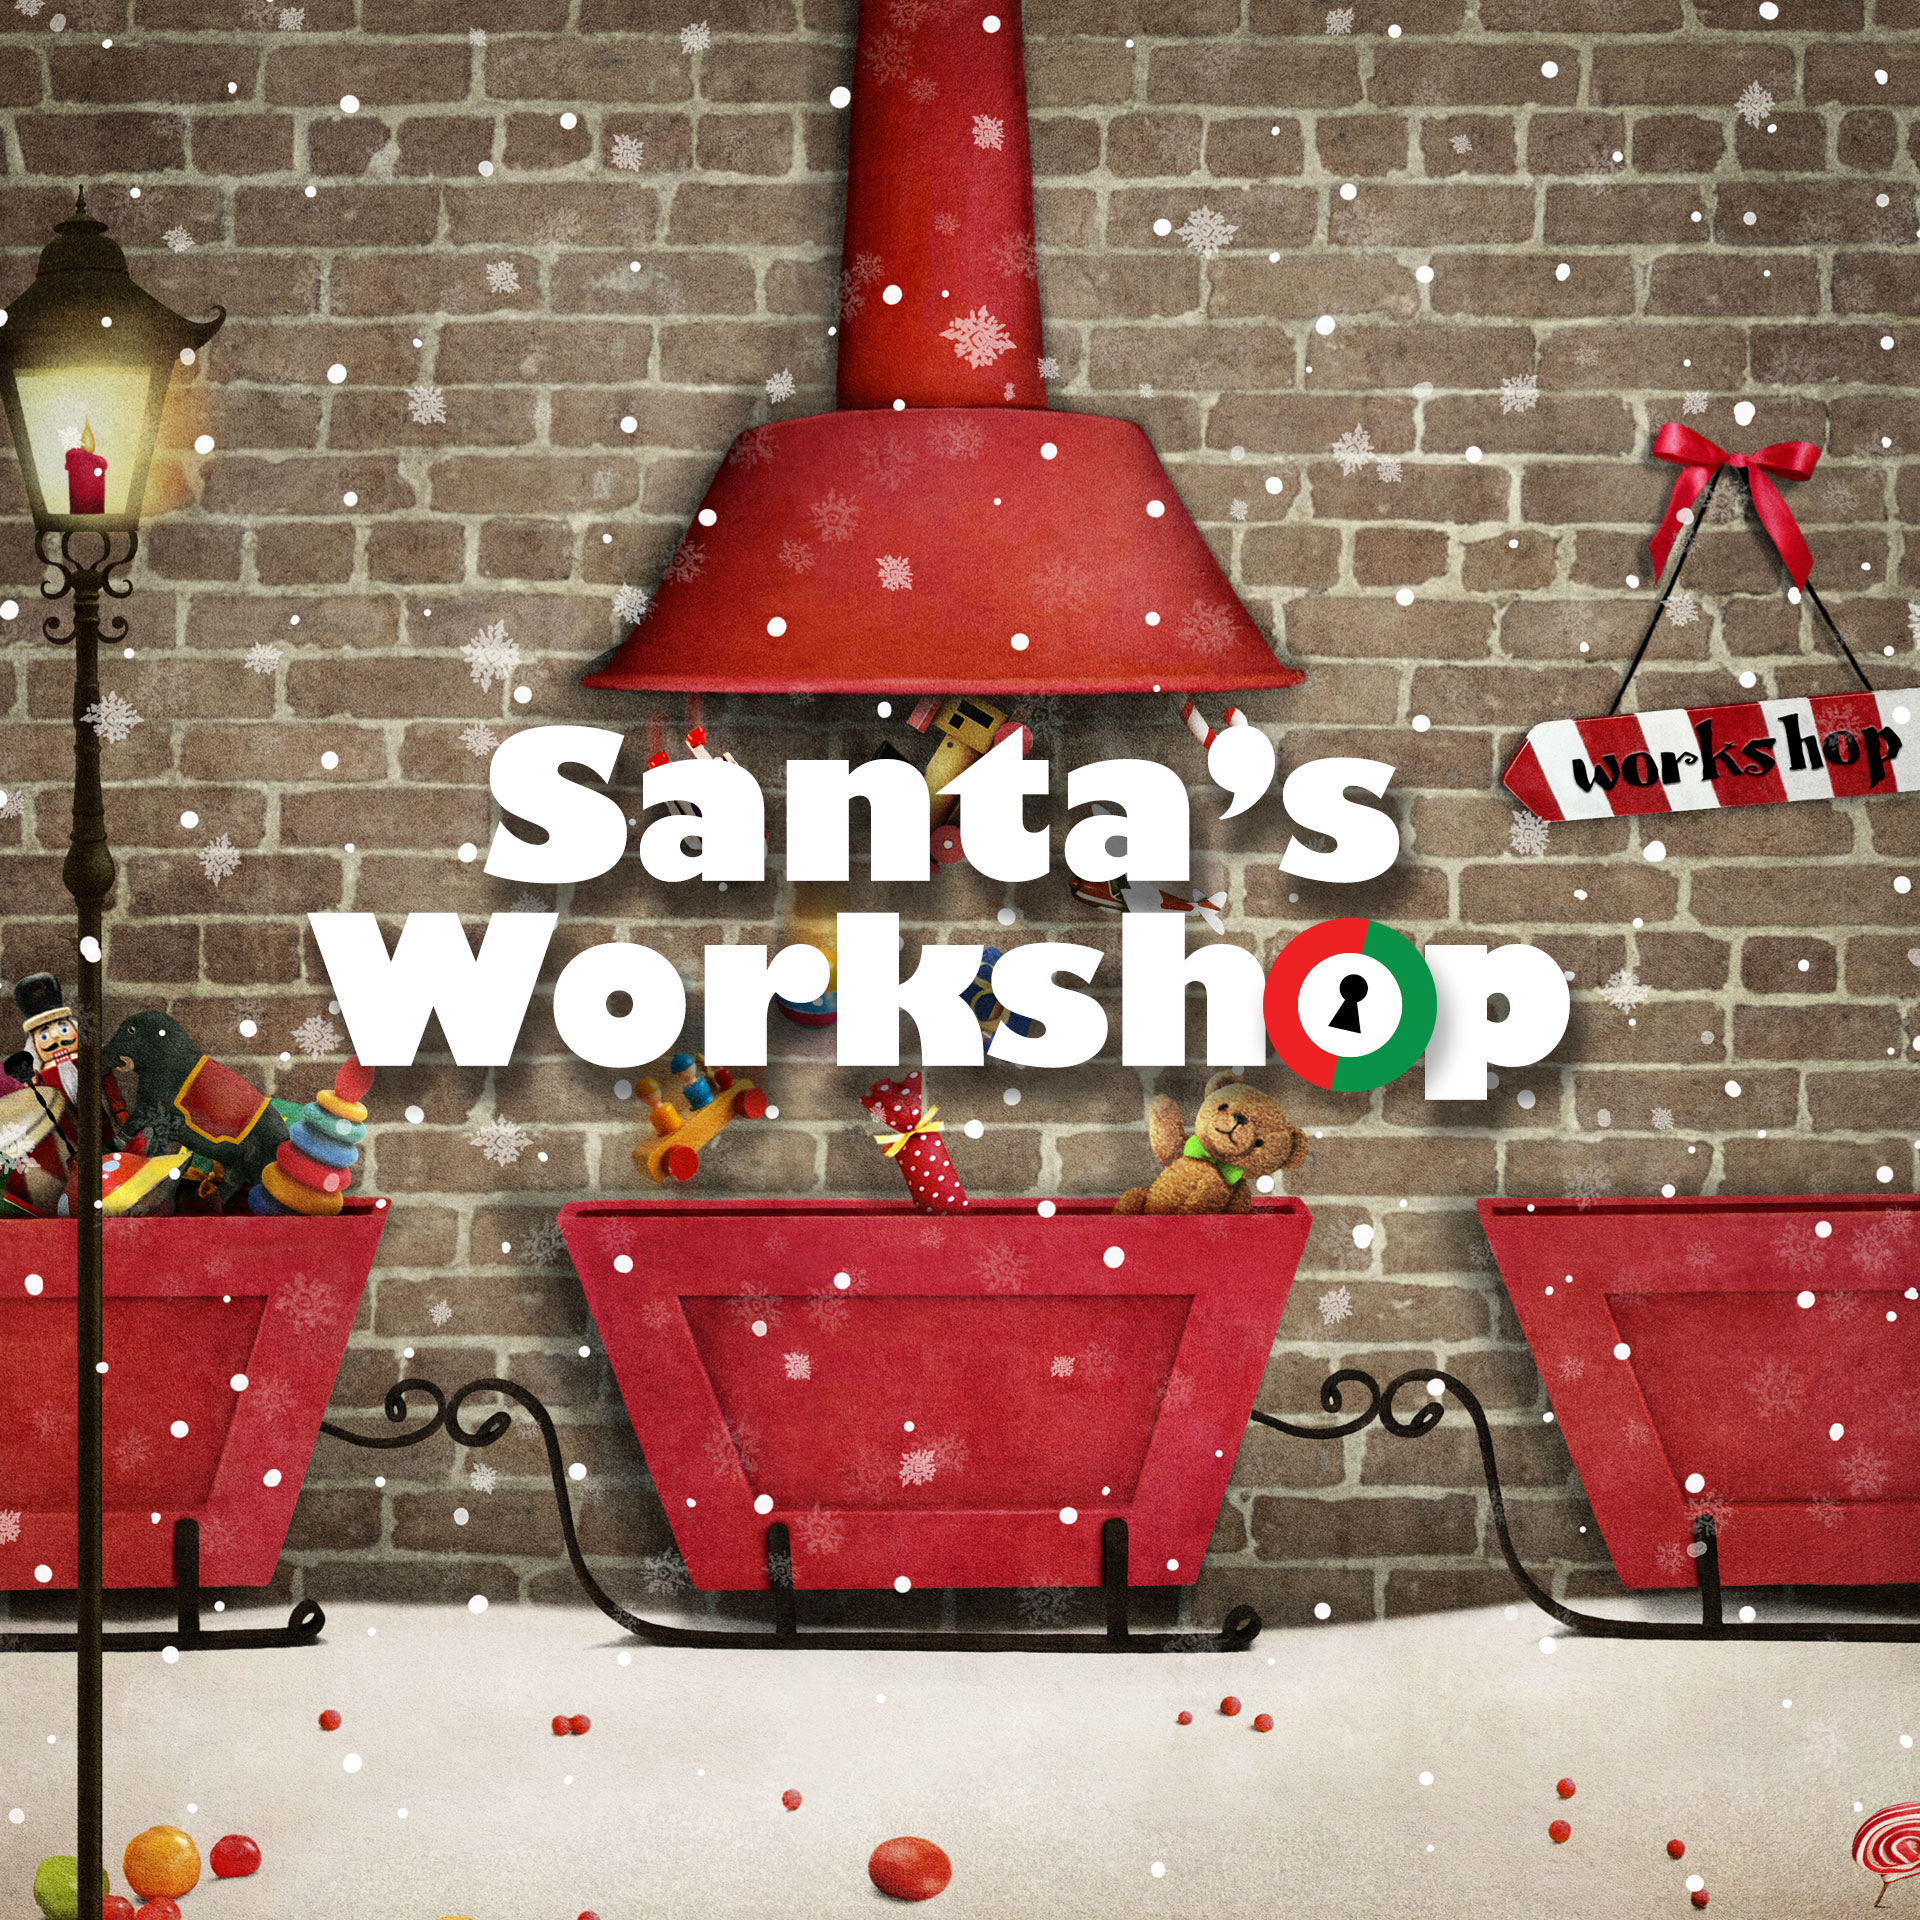 Holiday Mission, Santa’s Workshop Opens November 4, 2017